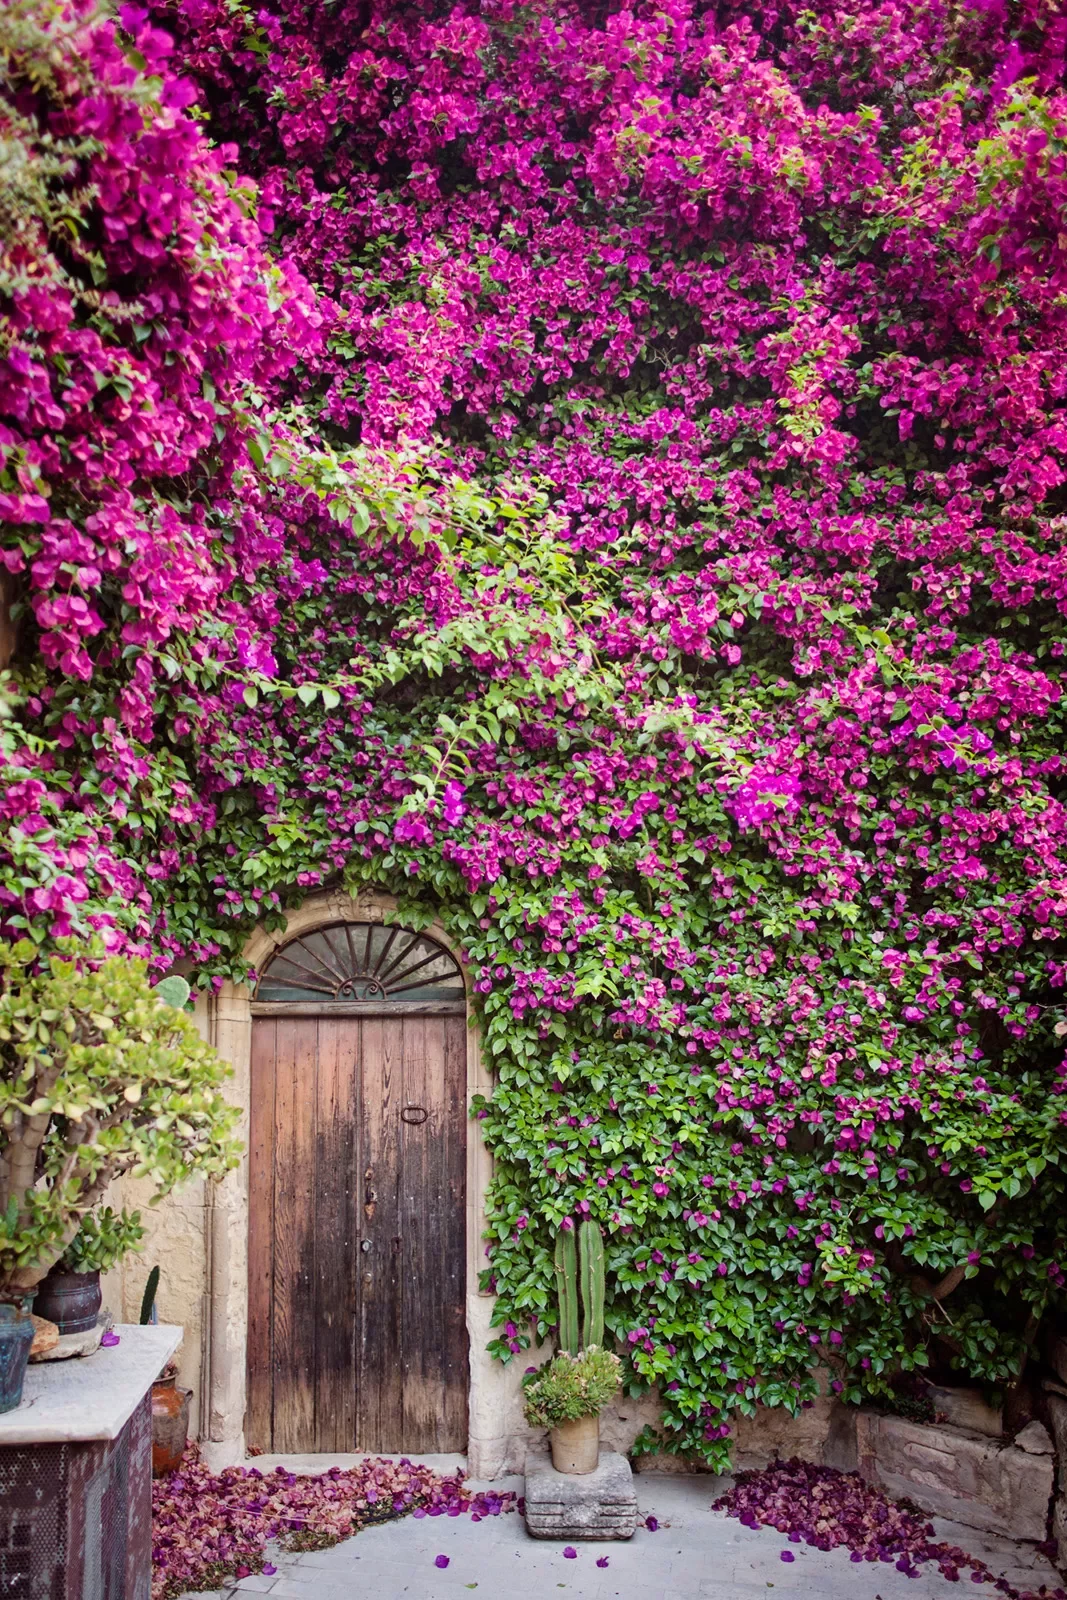 House-front shot, wooden door, array of purple flowers.